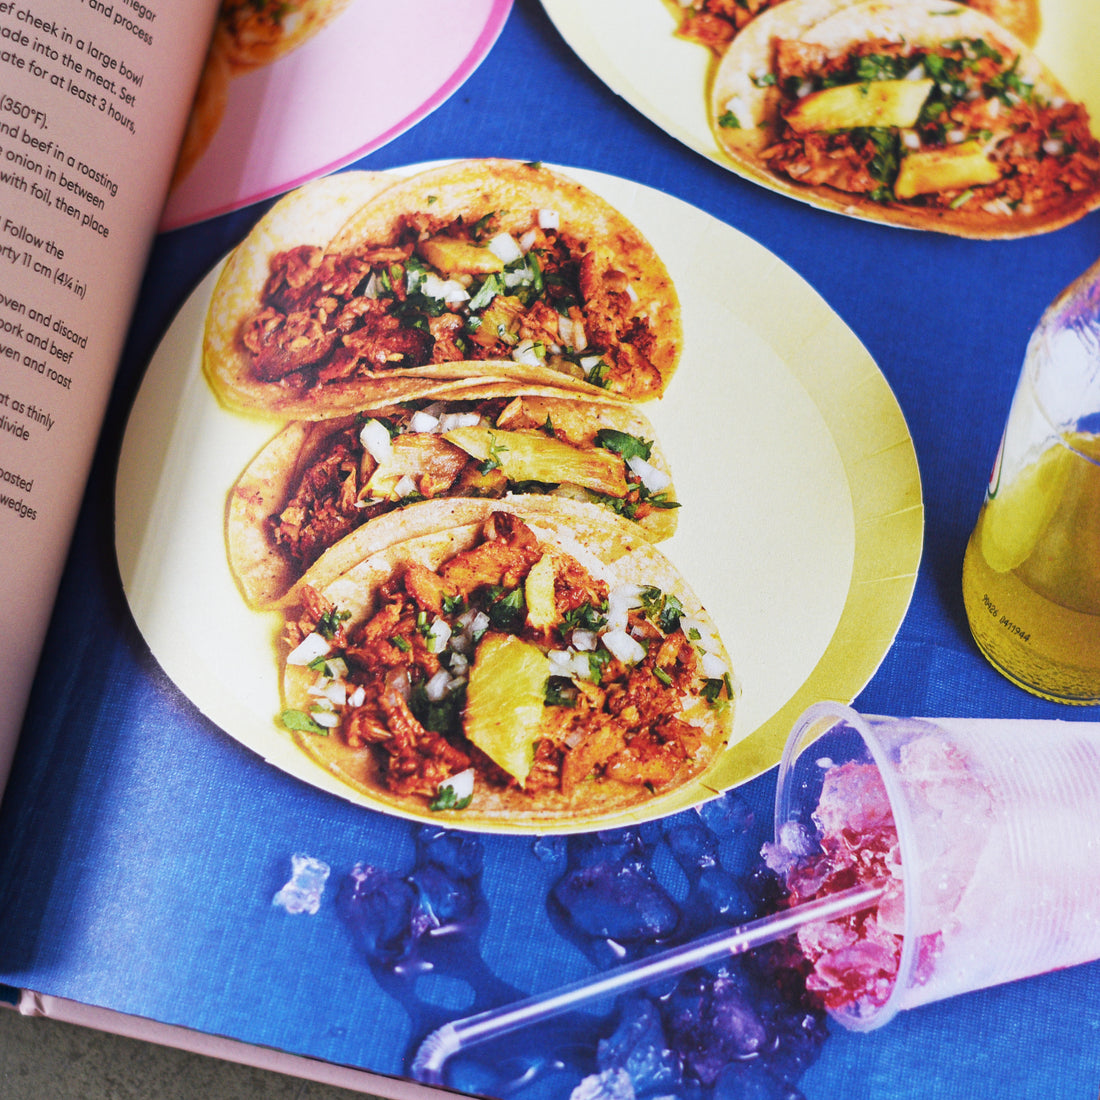 Comida Mexicana: meksykańska książka kucharska autorstwa Rosy Cienfuegos